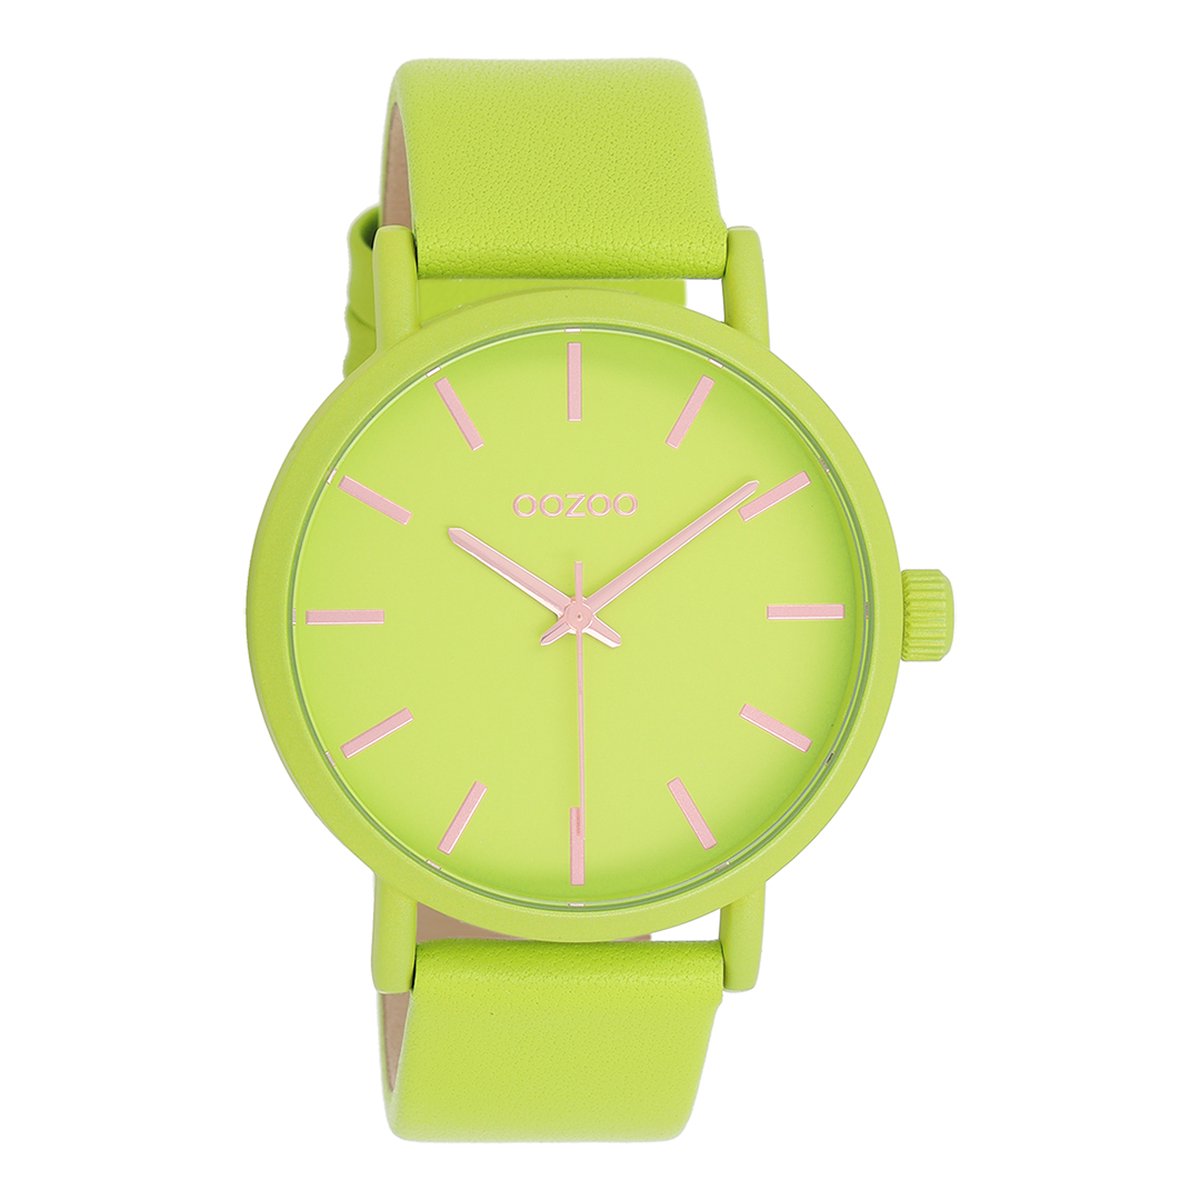 OOZOO Timepieces - Limoen groene OOZOO horloge met limoen groene leren band - C11177